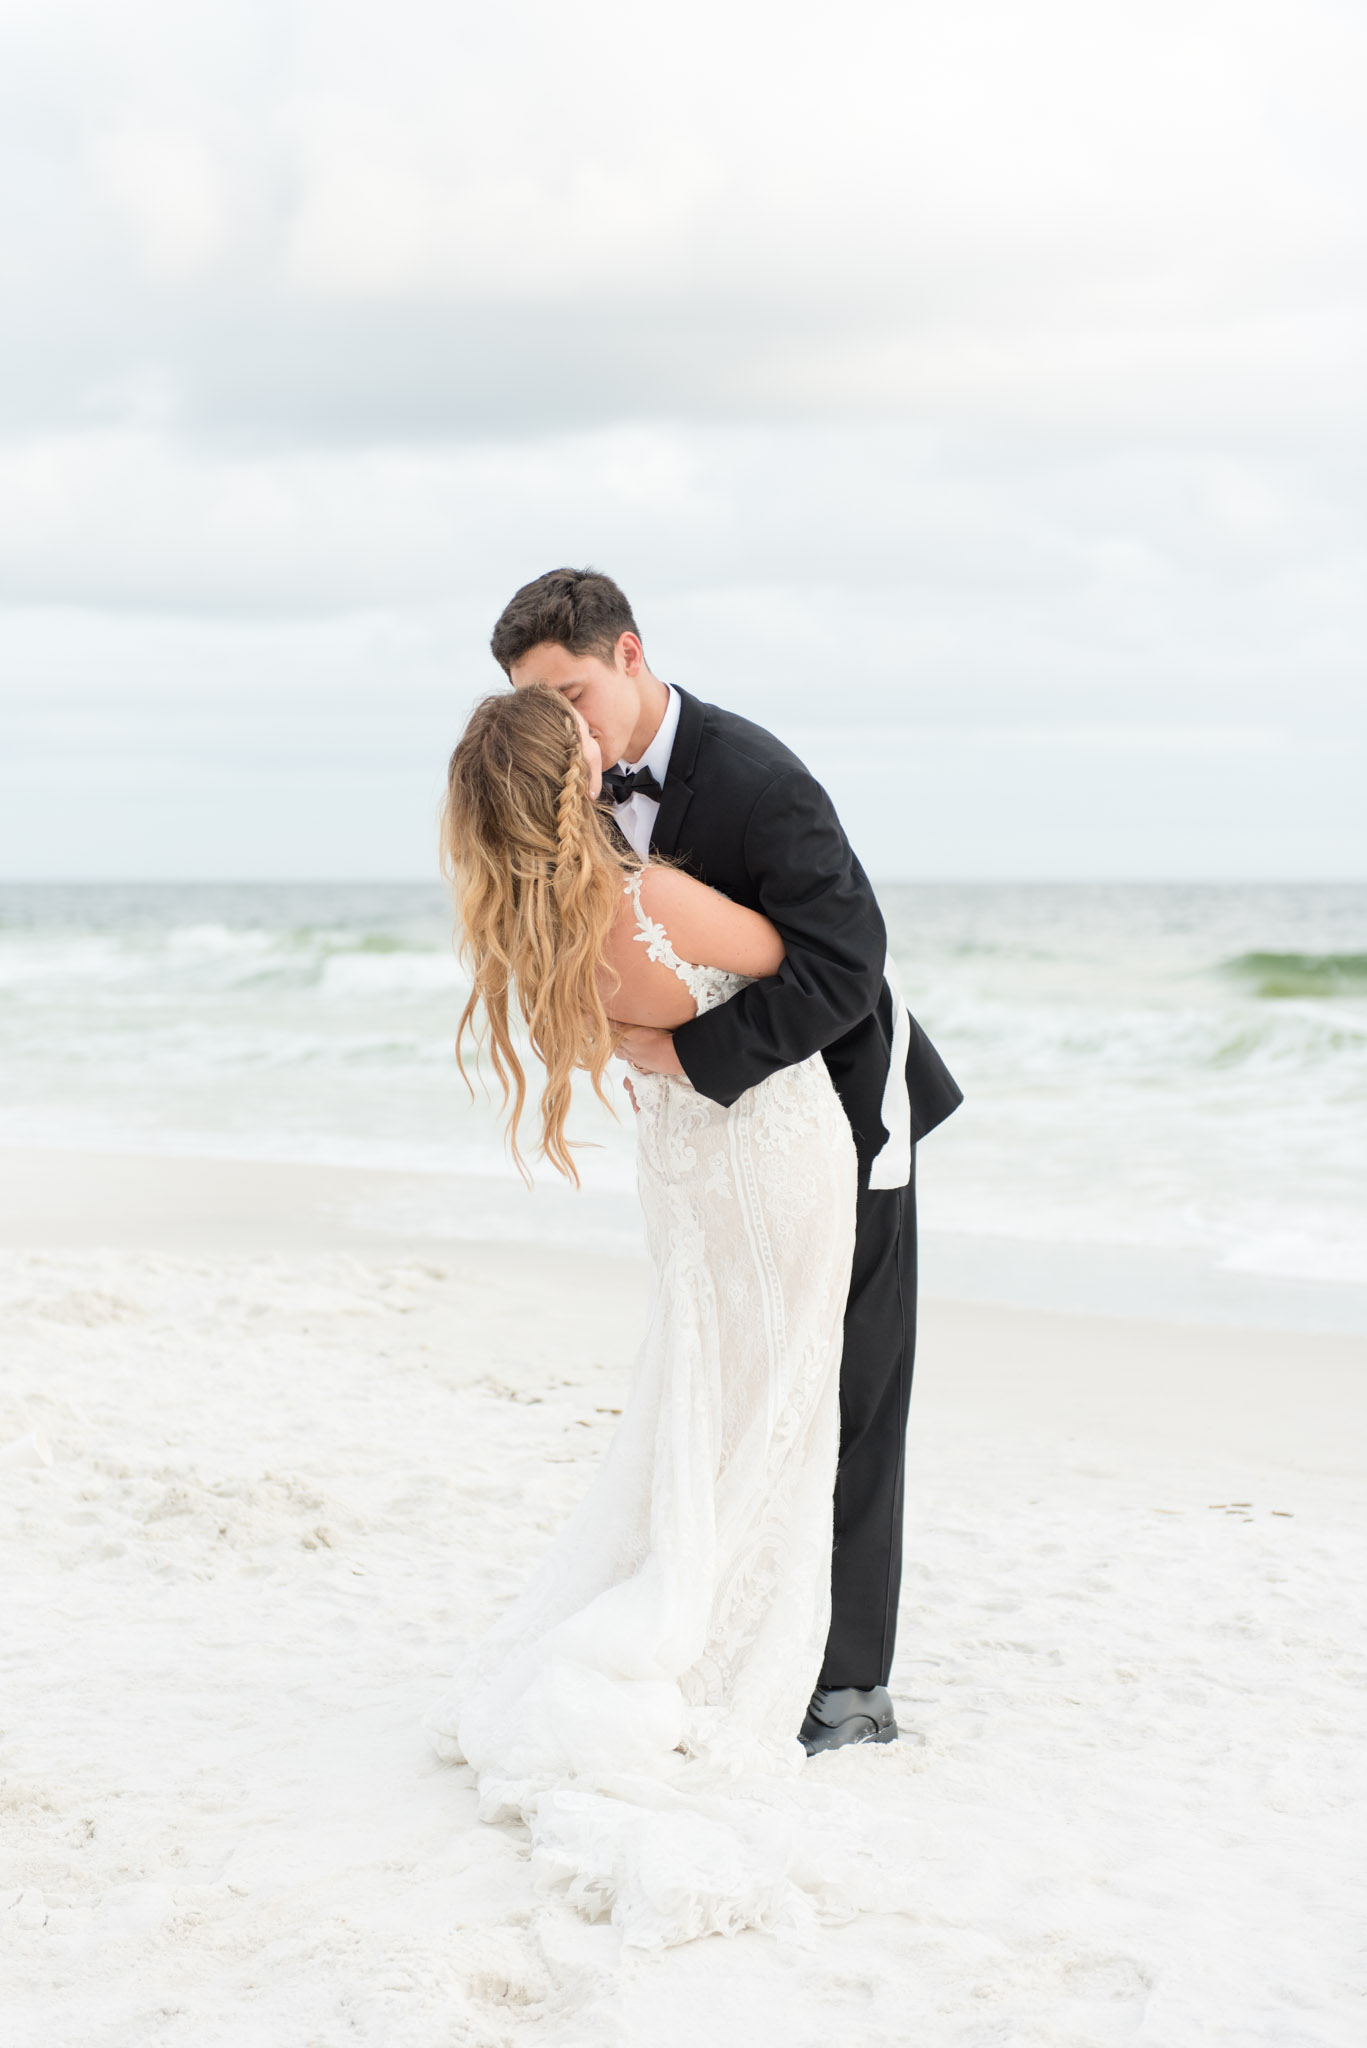 Groom dips bride on beach by ocean.